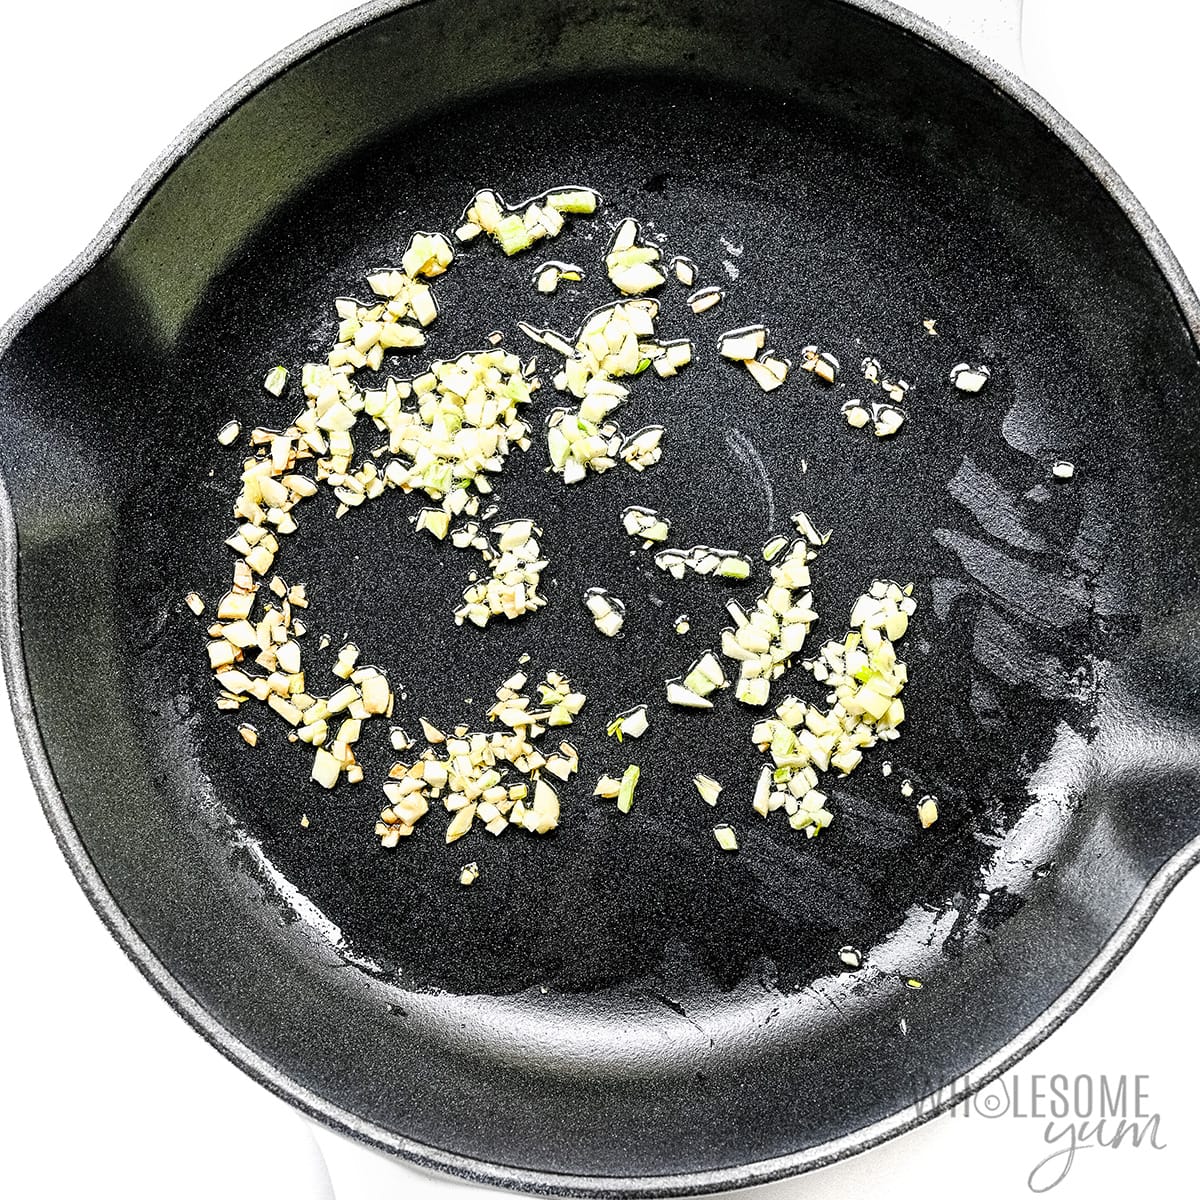 Garlic in a large frying pan.